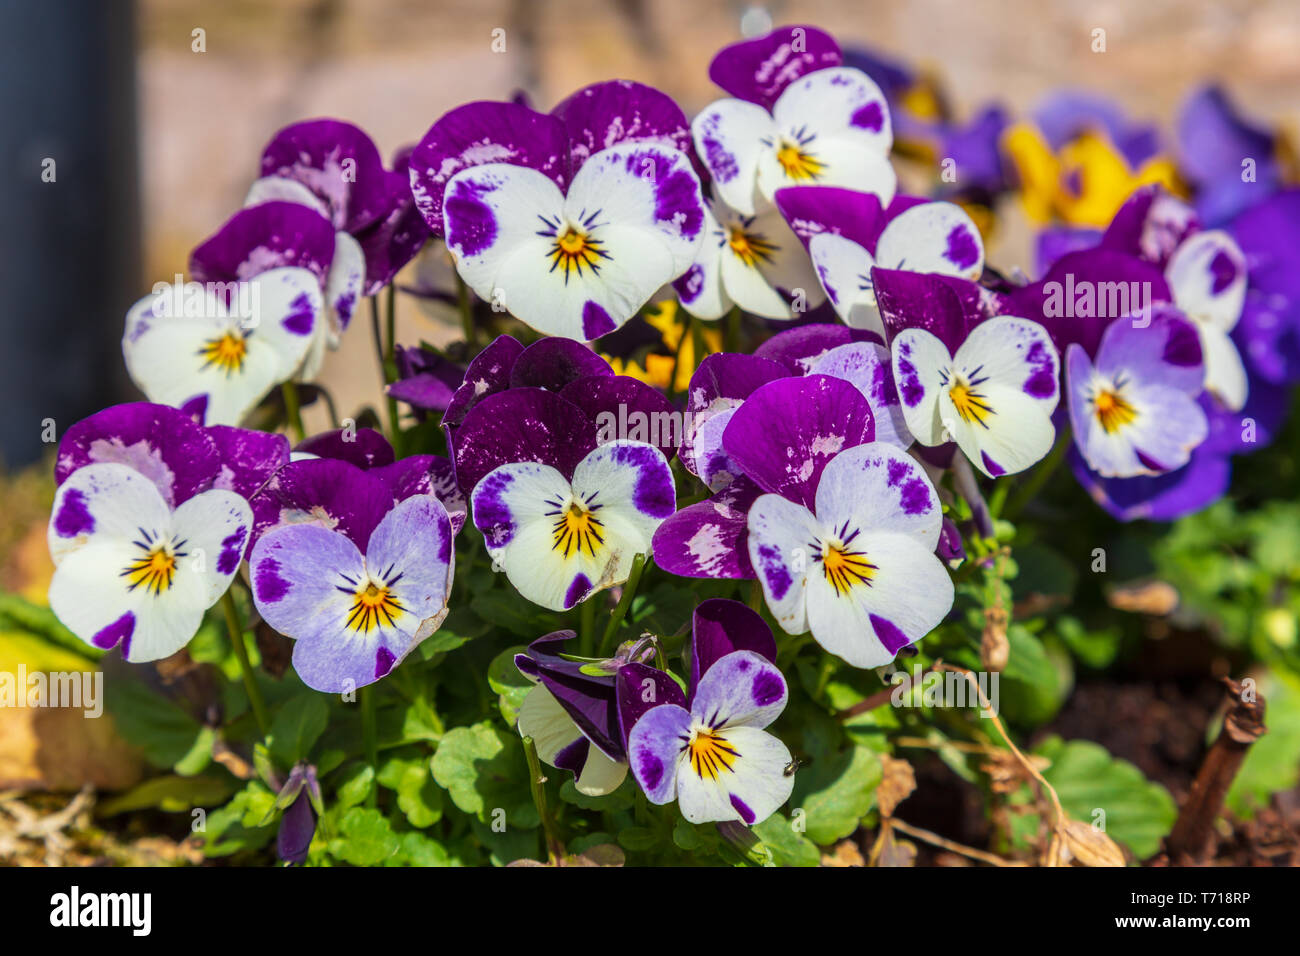 Pansies or viola flowers Stock Photo